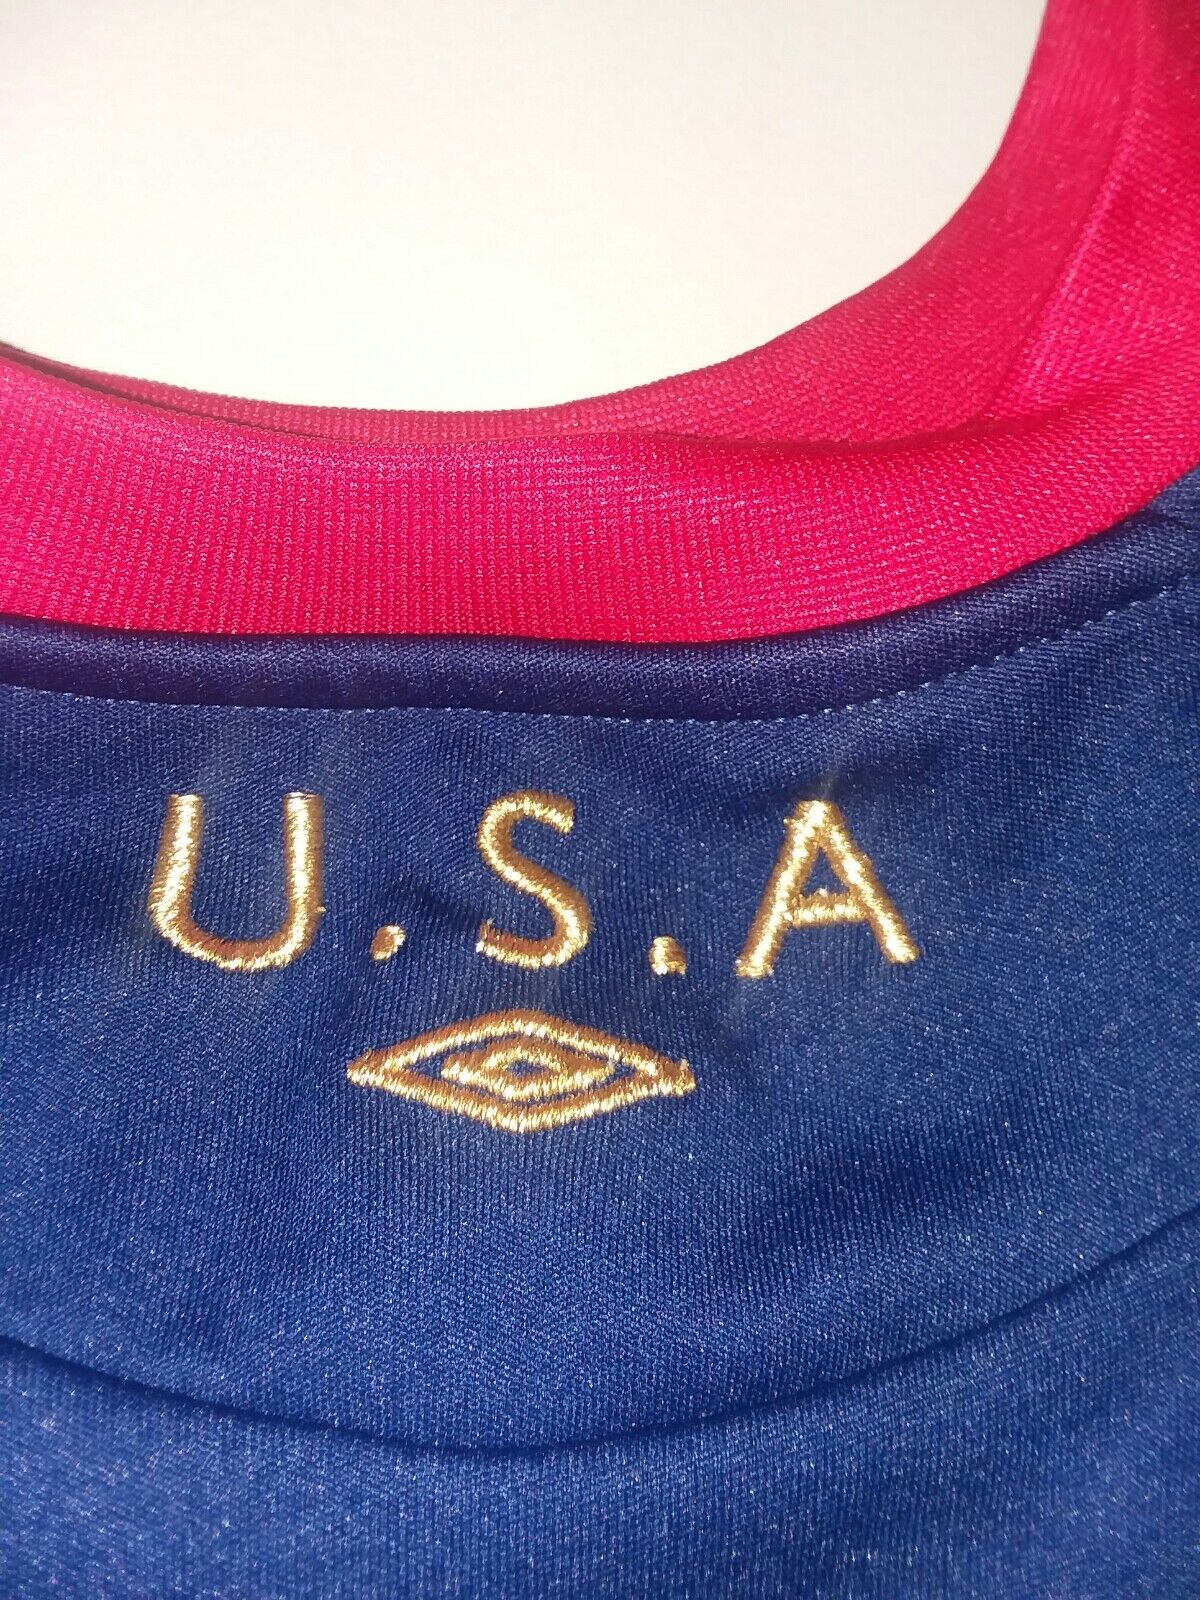 Umbro USA Soccor Team T Shirt V Neck Jersey Red W… - image 5